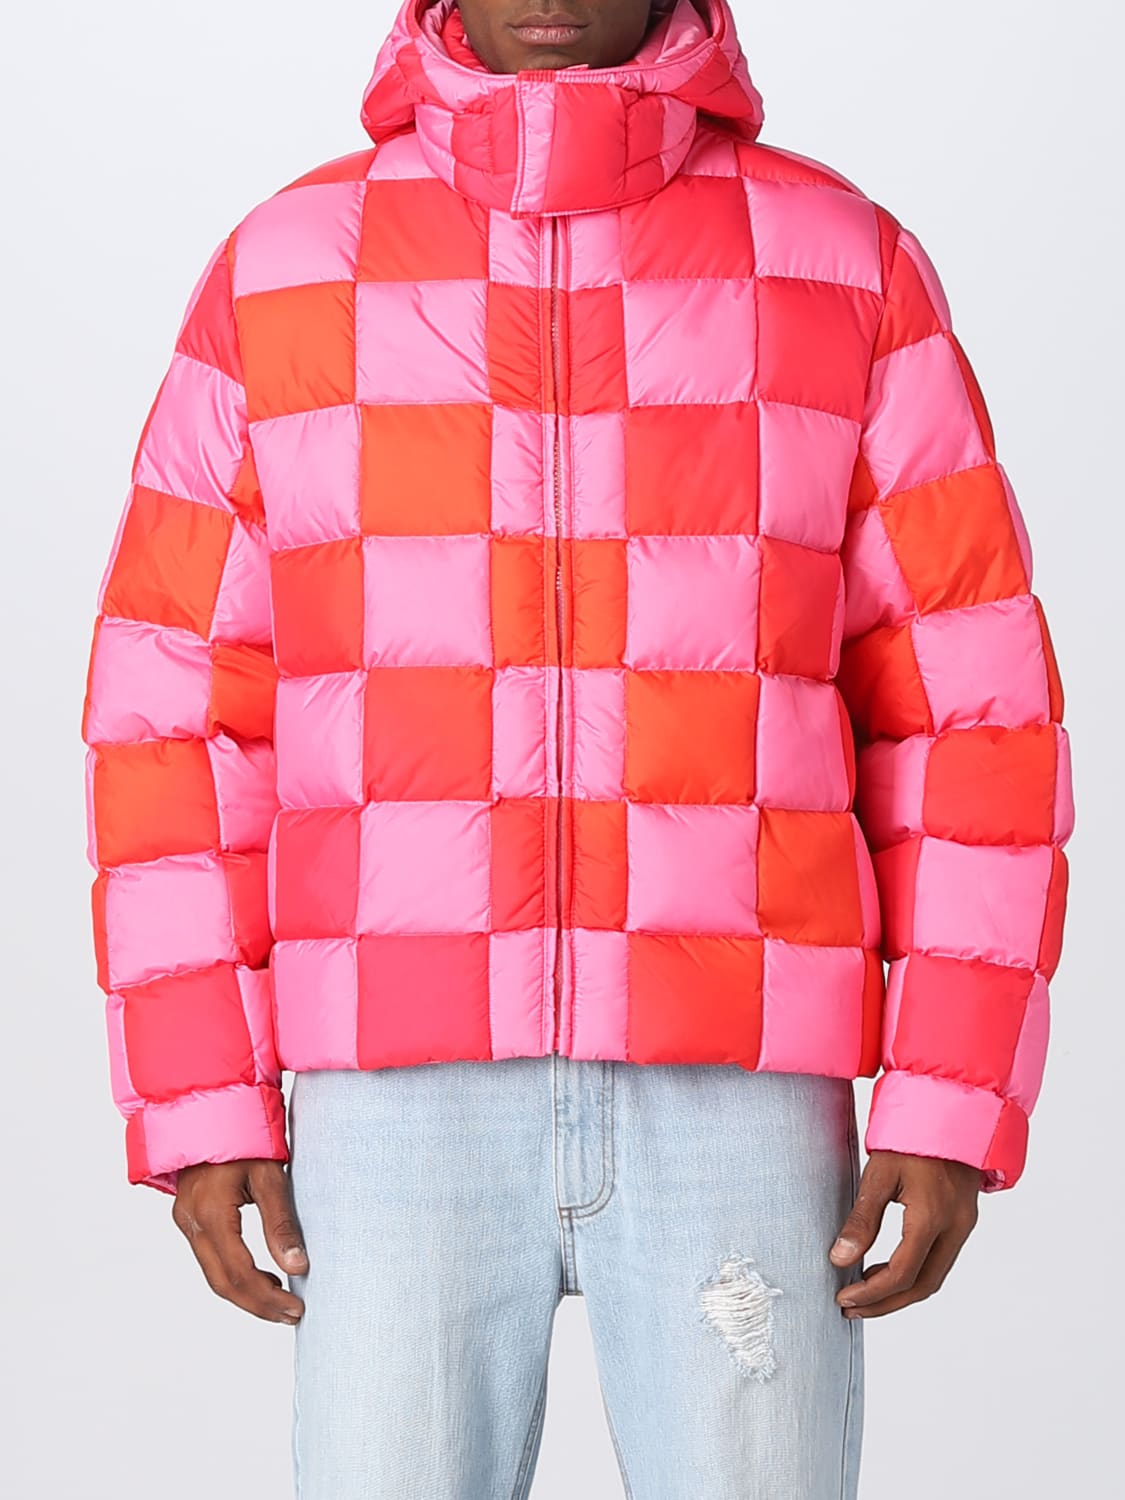 Erl Outlet: jacket for man - Pink | Erl jacket ERL05C002 online at